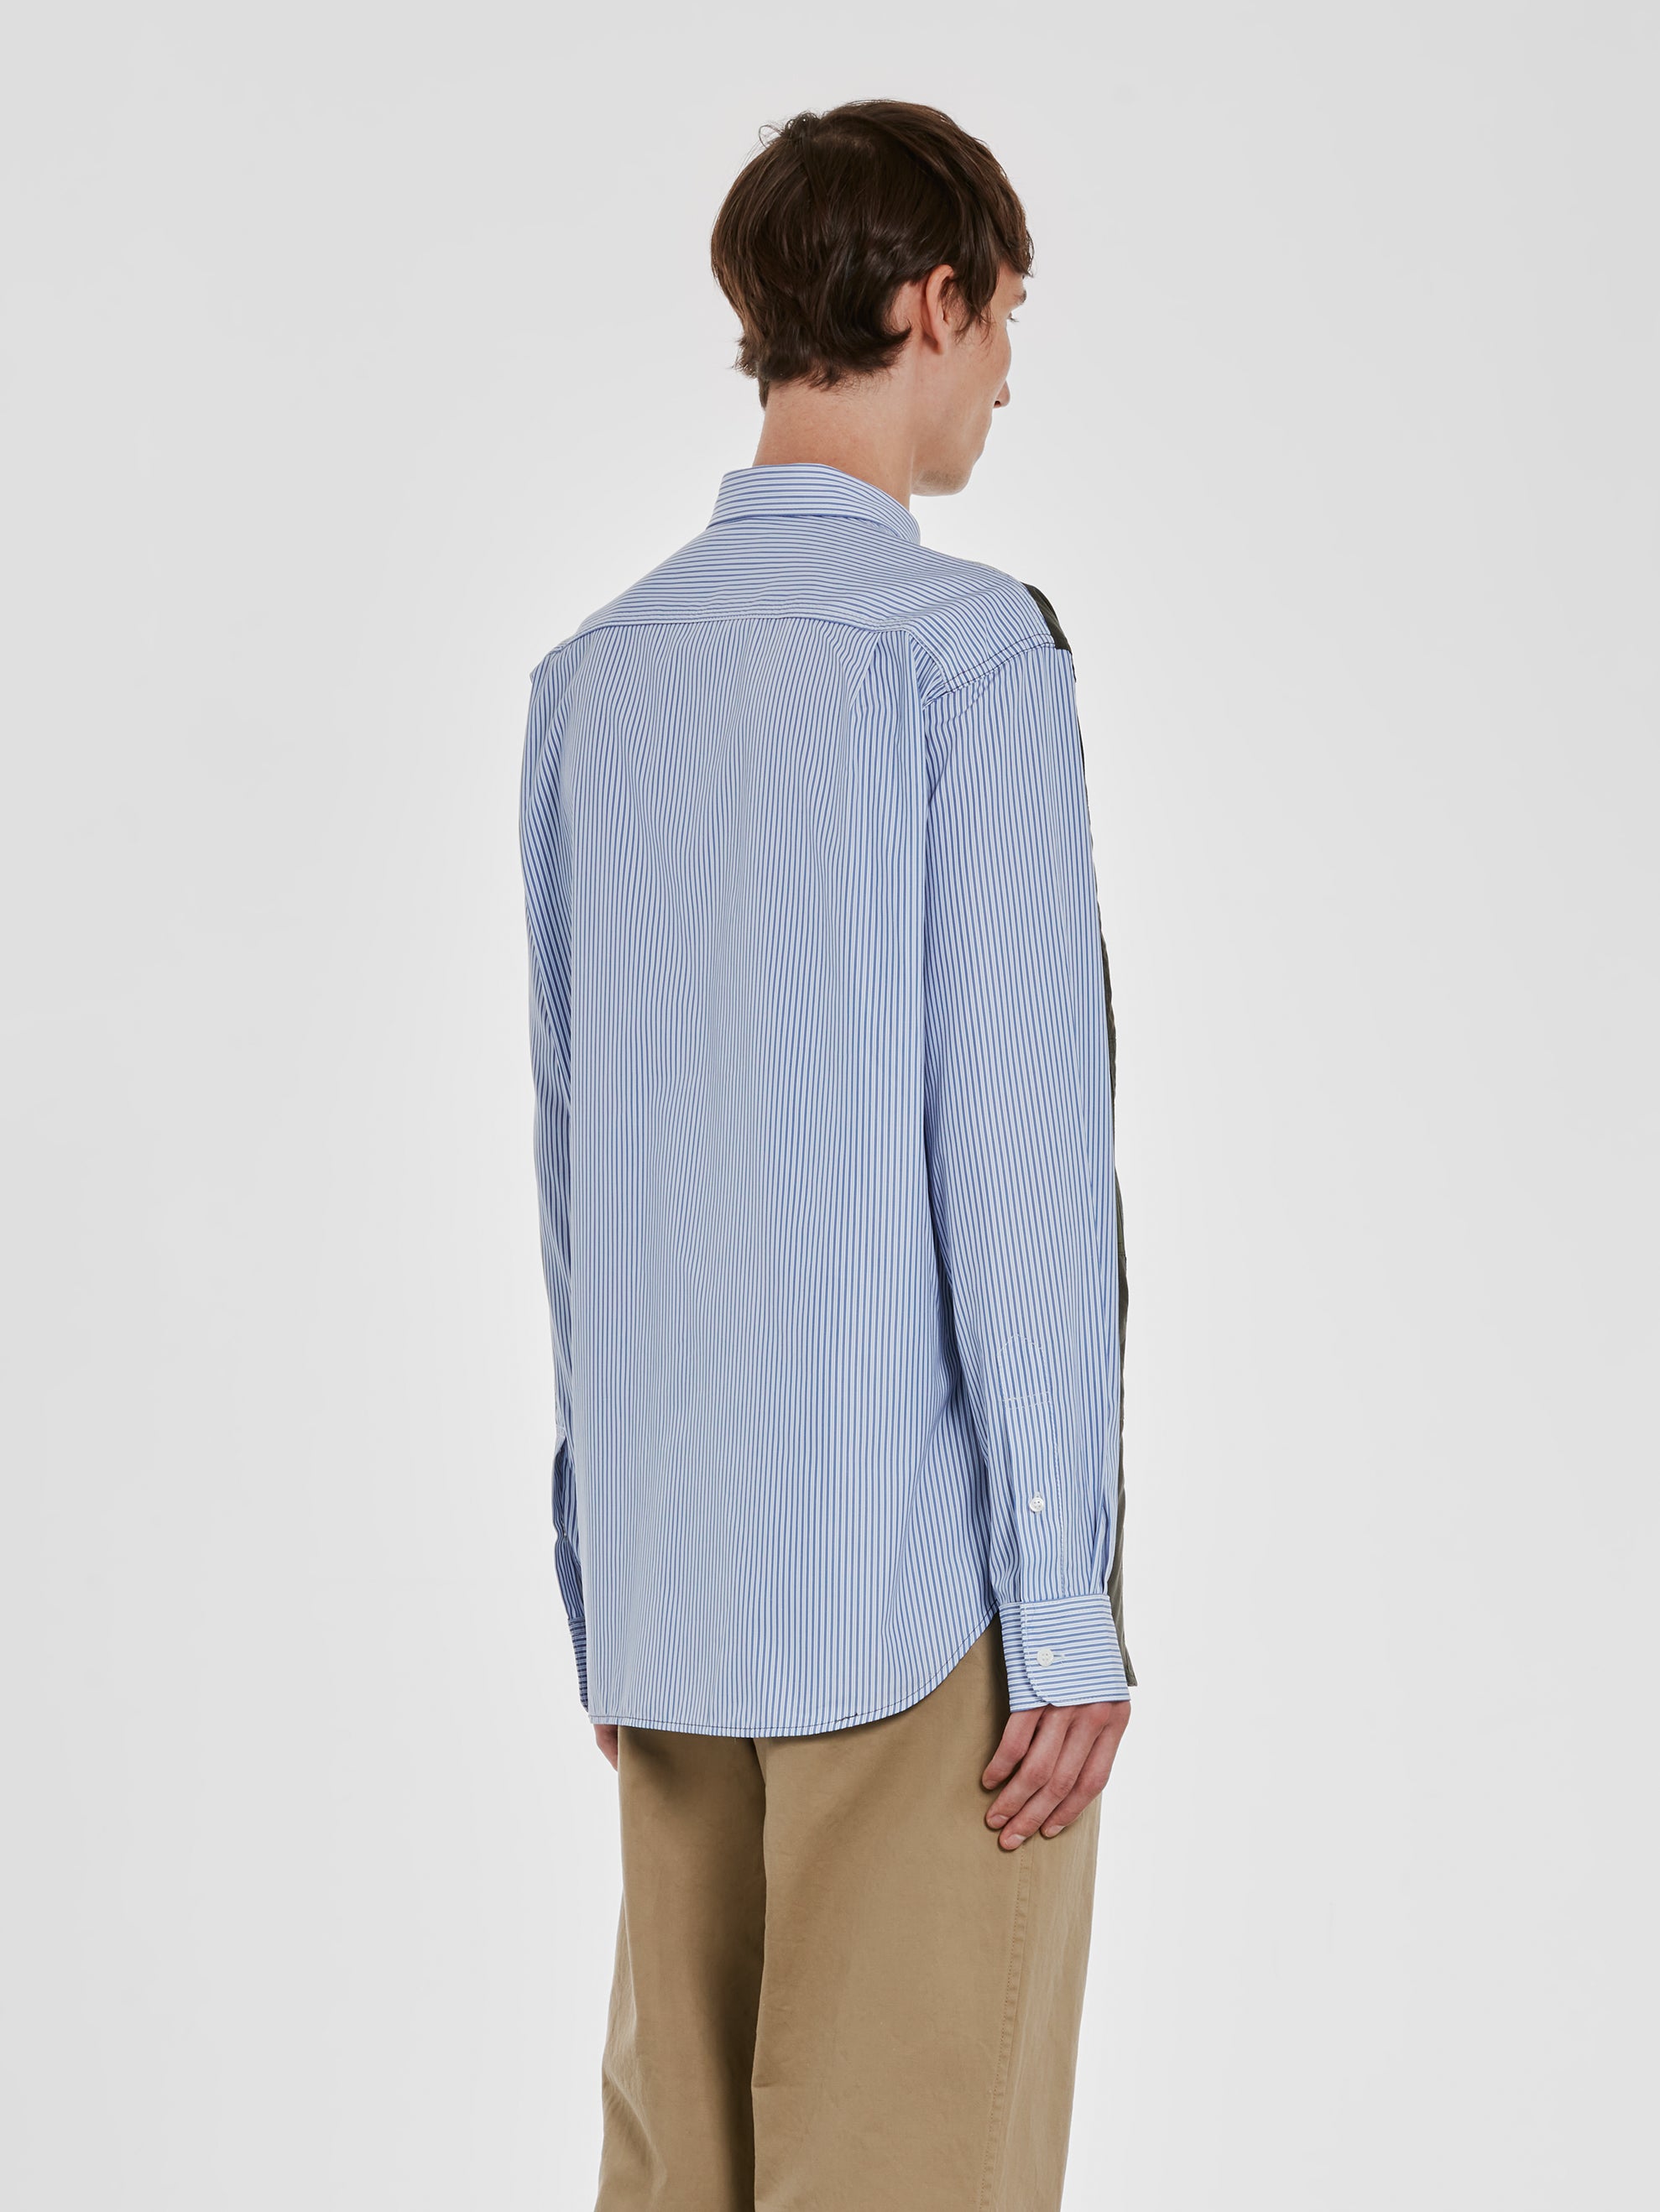 Comme des Garçons Homme - Men’s Multi Fabric Shirt - (Khaki/Blue) view 3